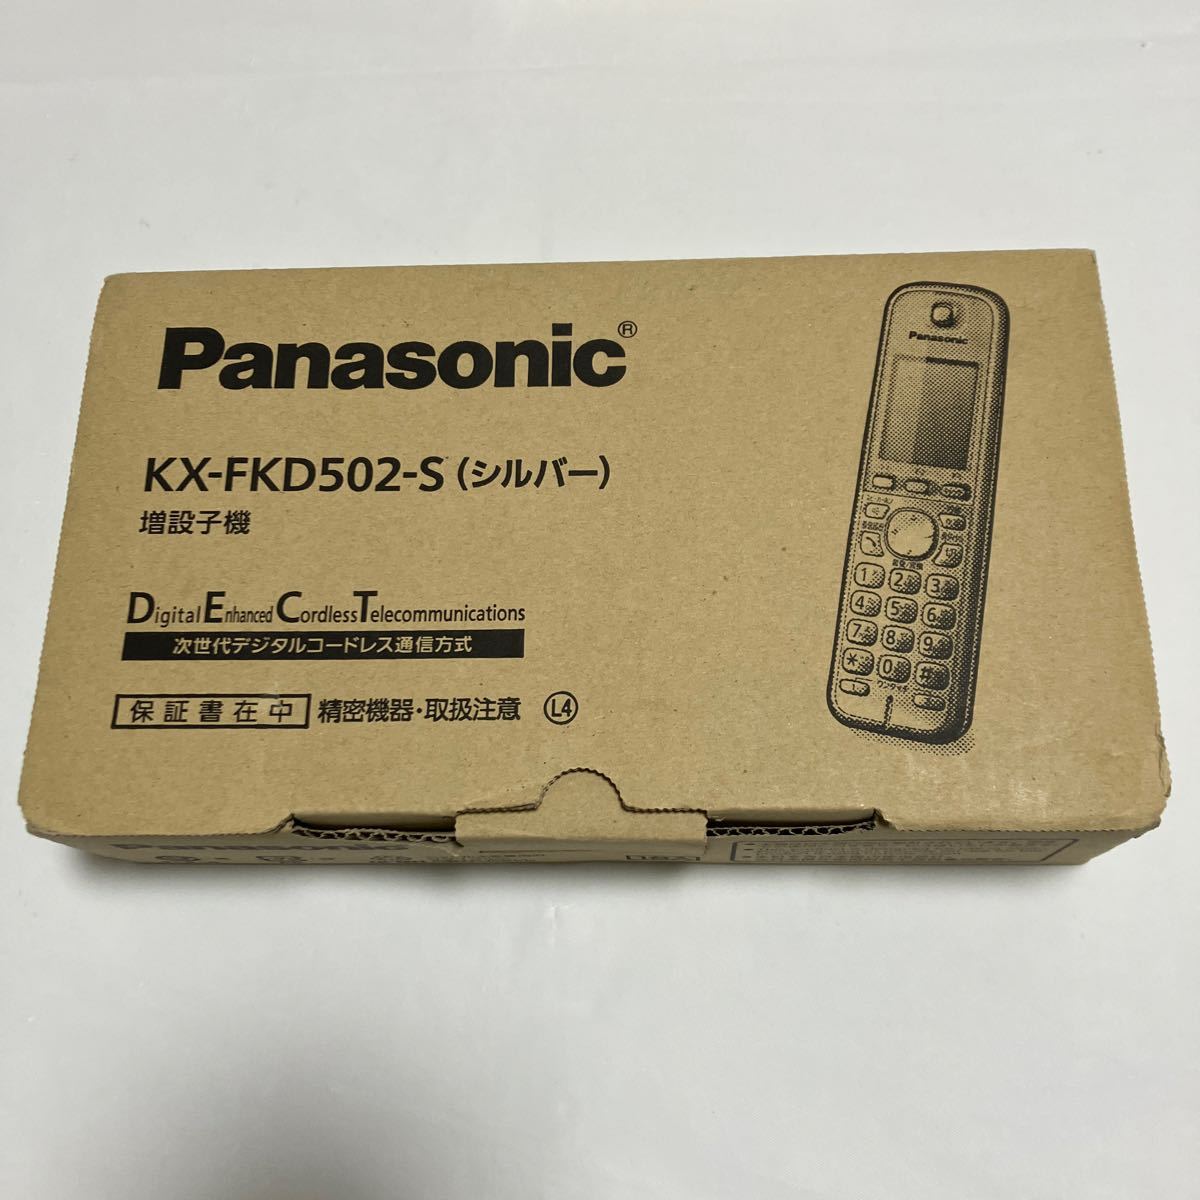 Panasonic Panasonic cordless handset kx-fkd502-s